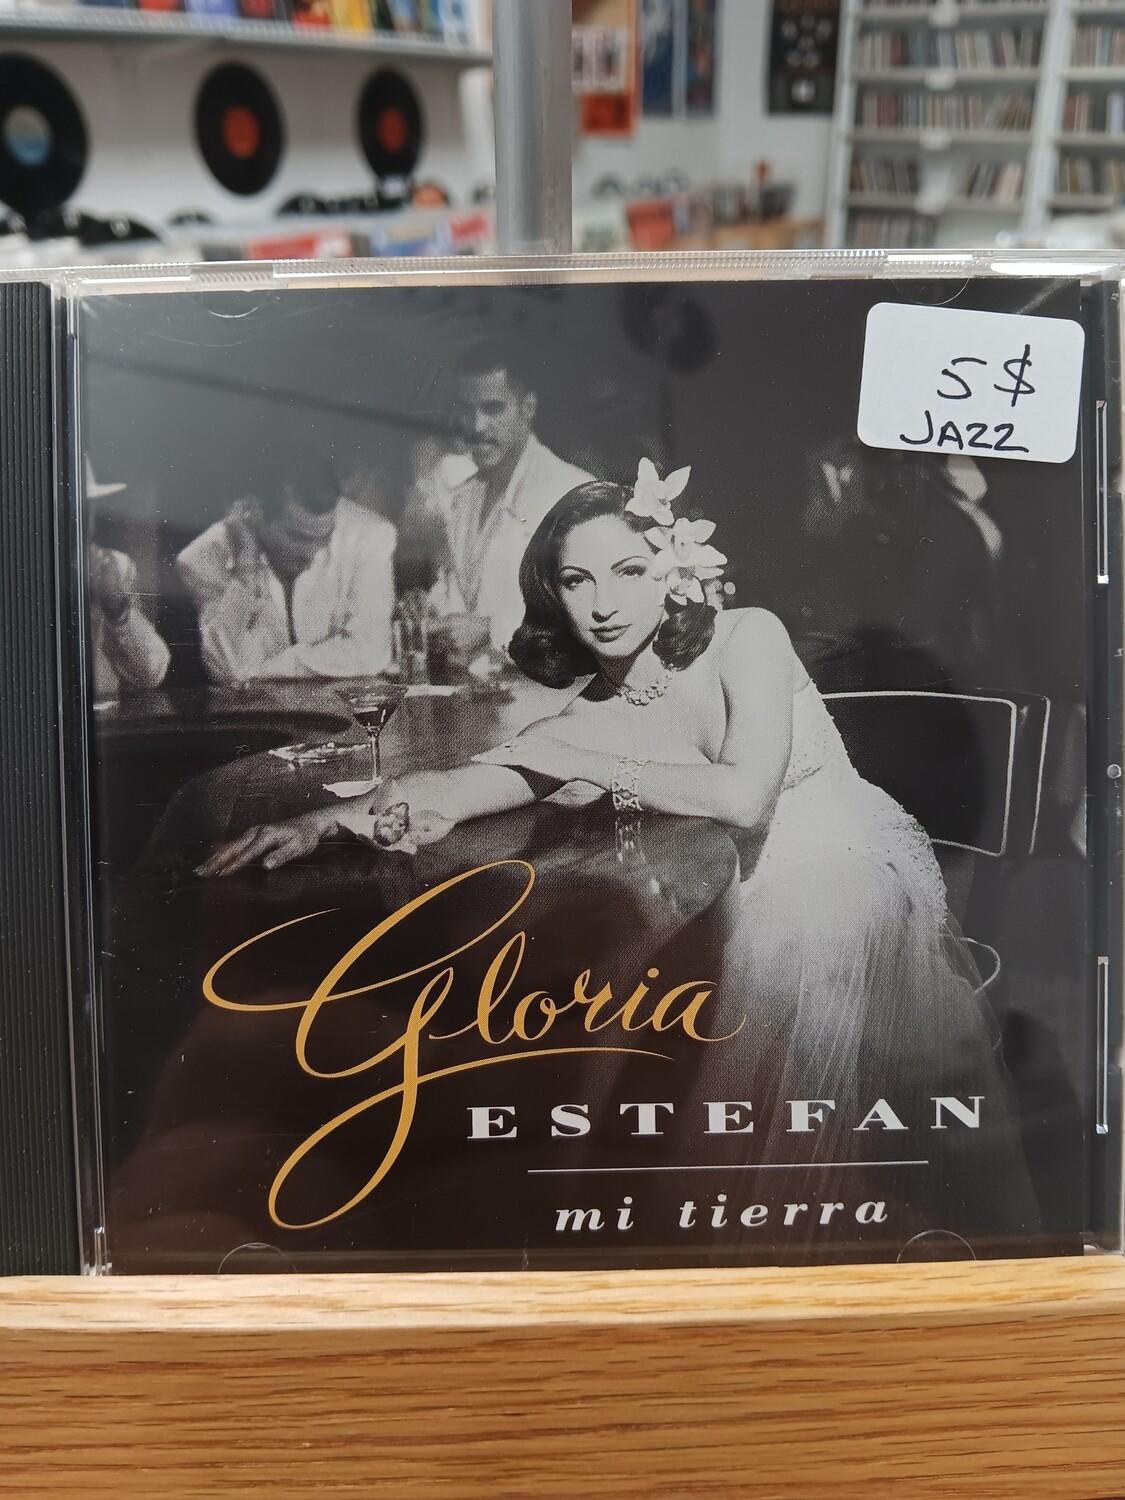 GLORIA ESTEFAN - Mi tierra (CD)